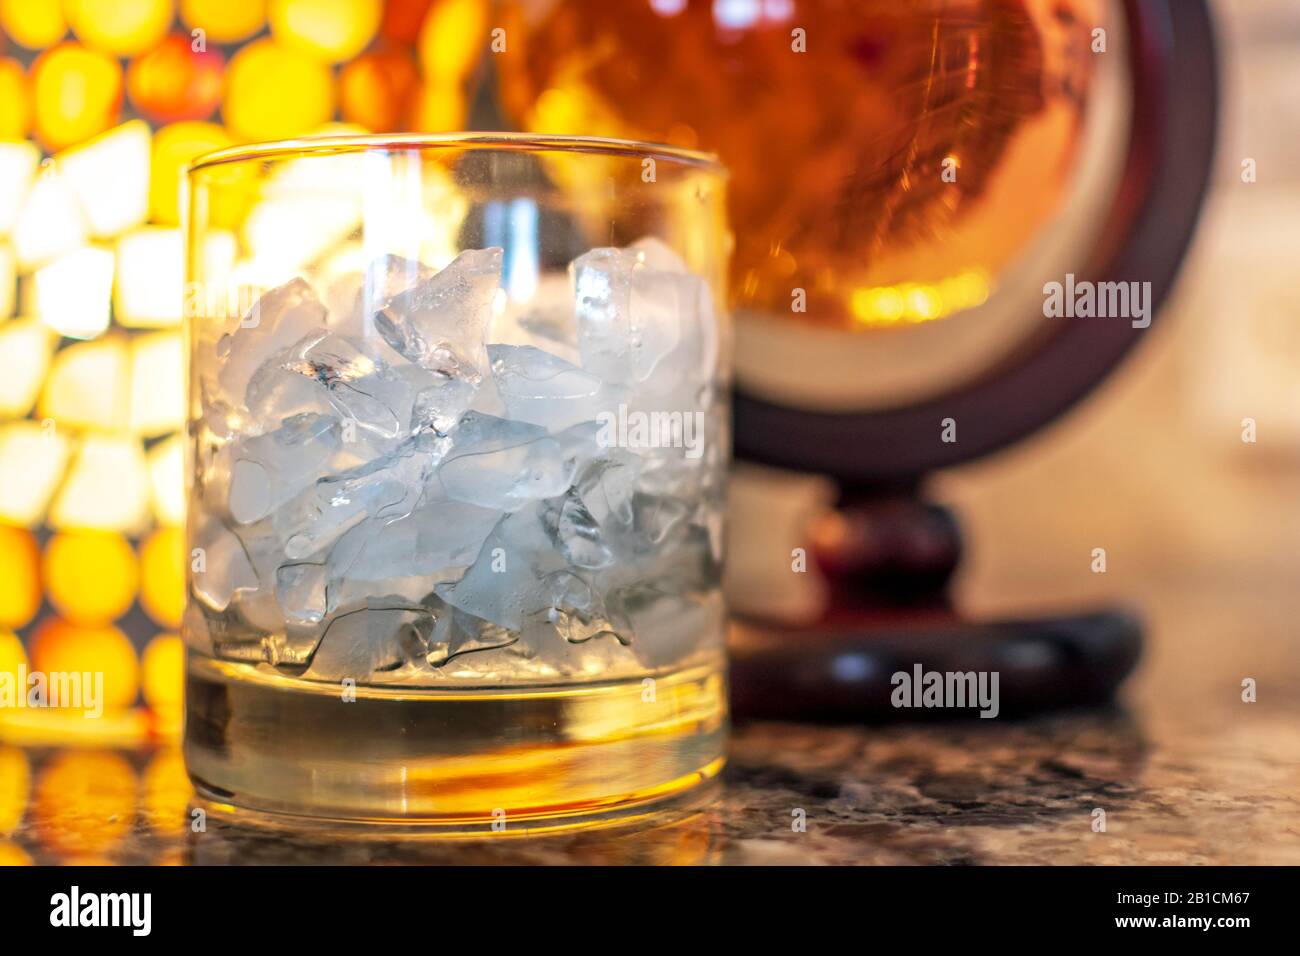 Un verre d'alcool de glace pilée est placé de côté un récipient rond de whisky scotch sur un comptoir en granit avec lumière chaude Banque D'Images